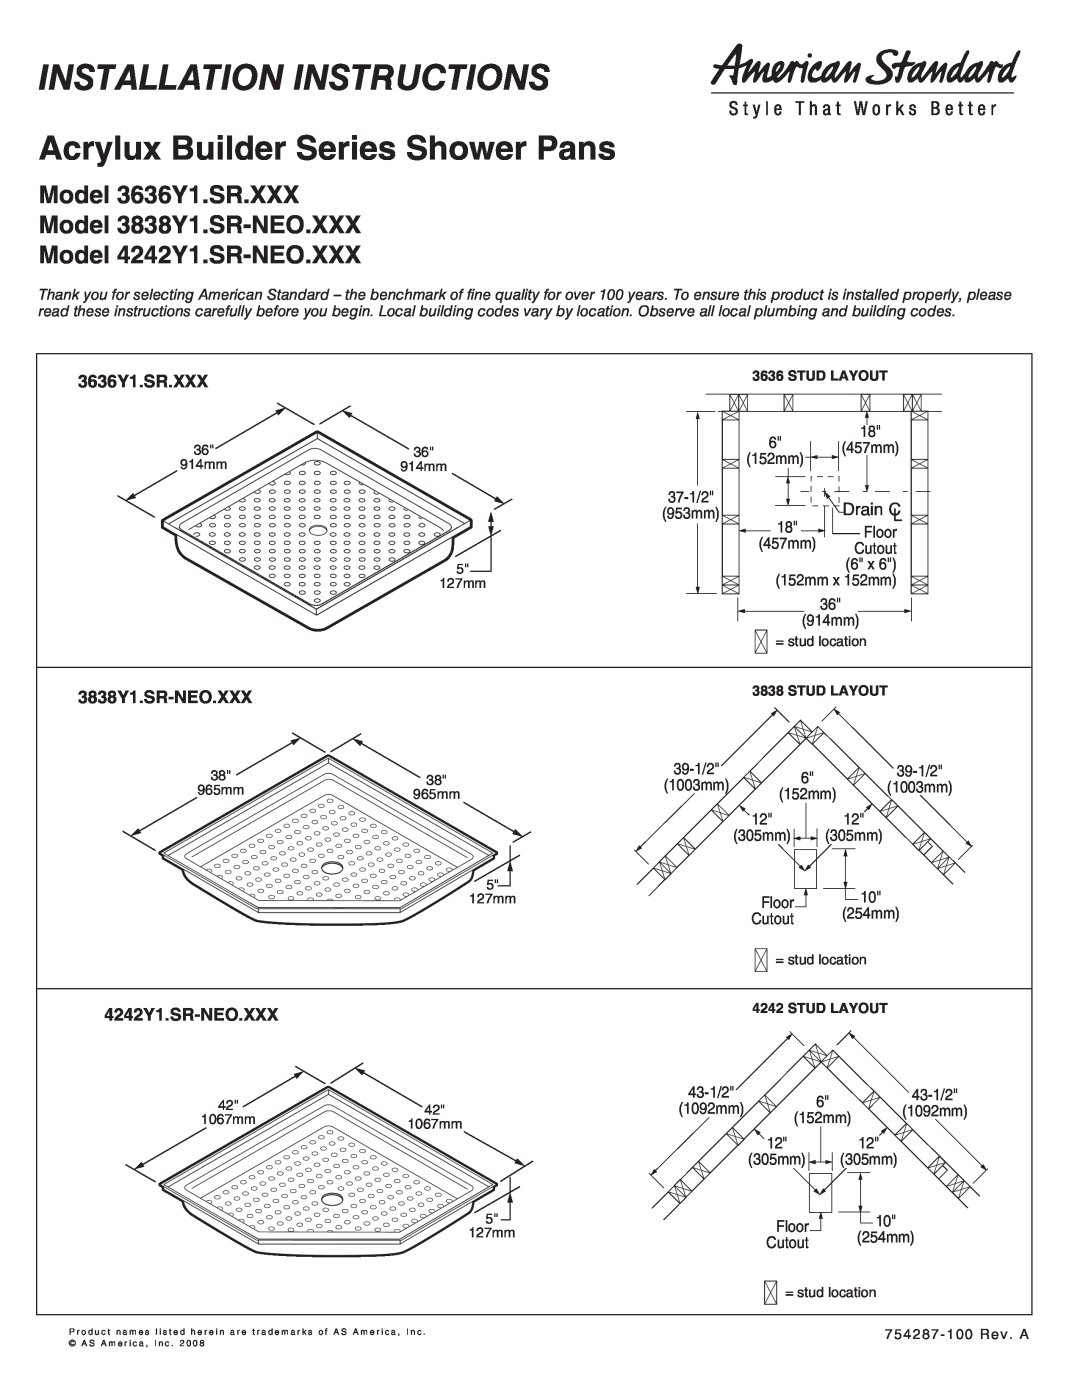 American Standard 3636Y1.SR-XXX installation instructions Installation Instructions, Acrylux Builder Series Shower Pans 